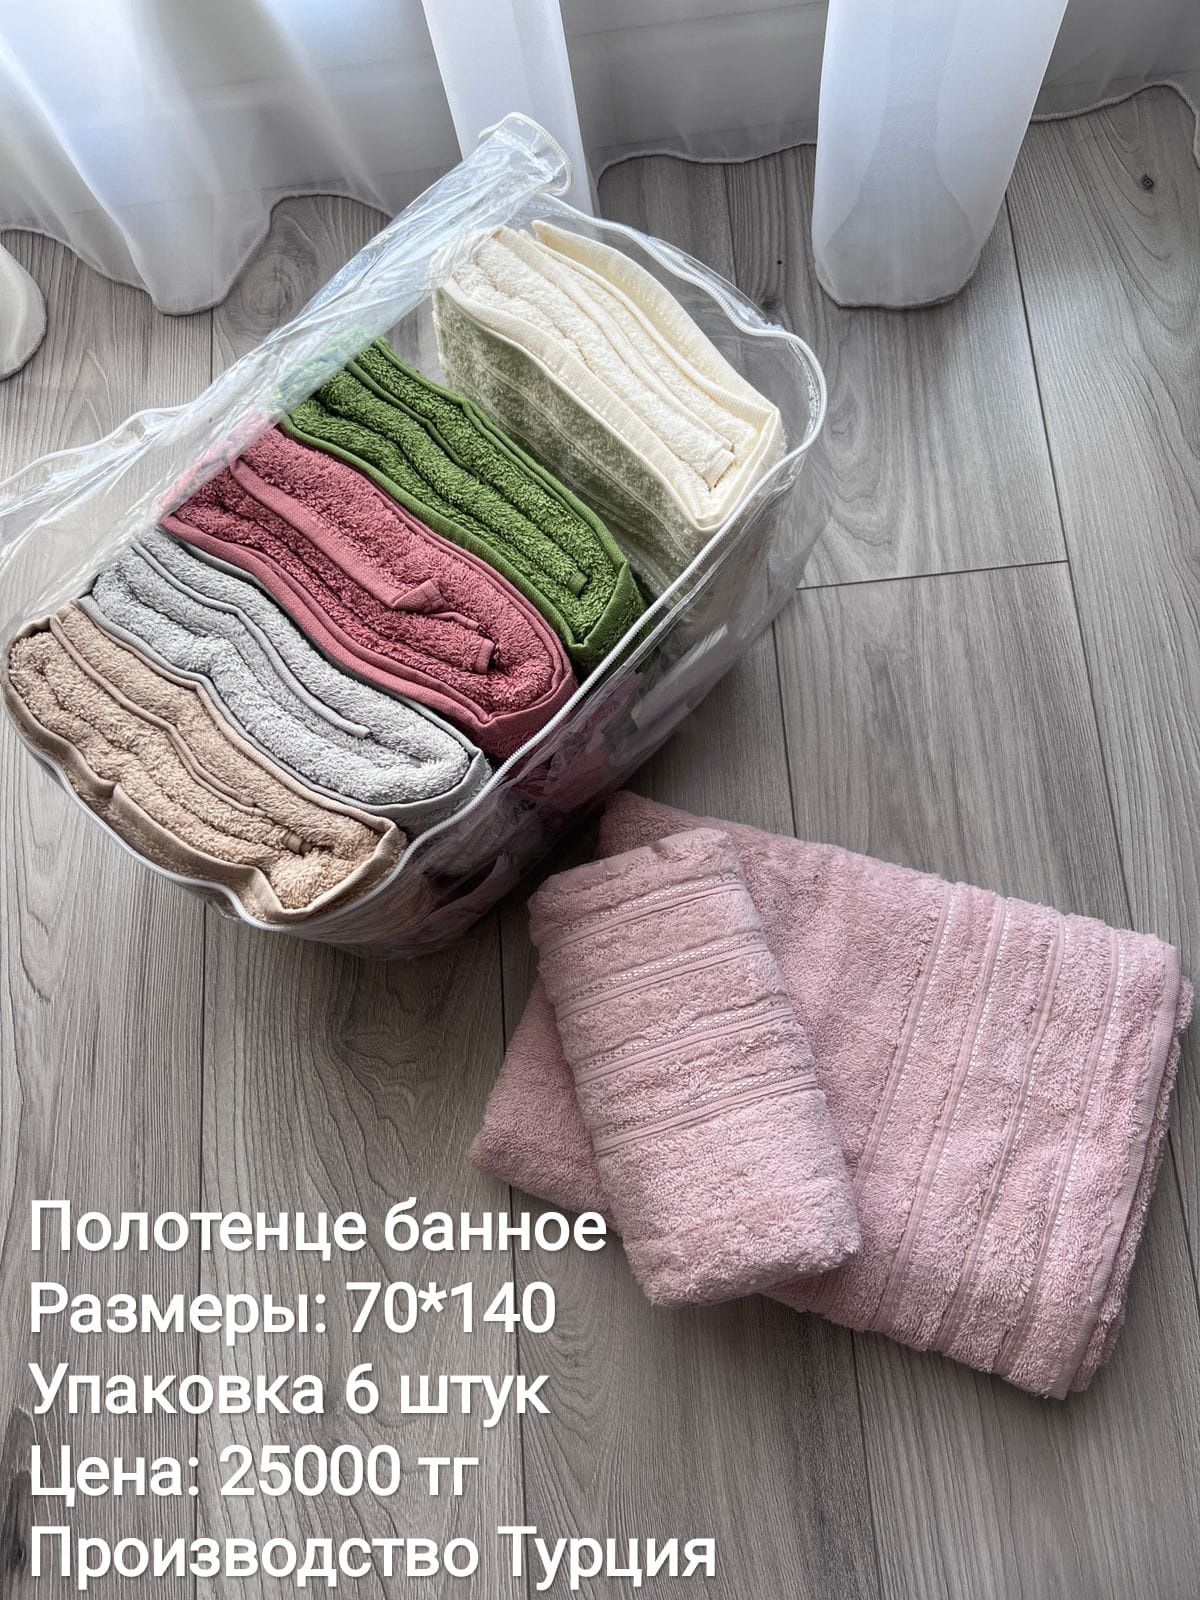 Продам полотенца банные производства Турции.